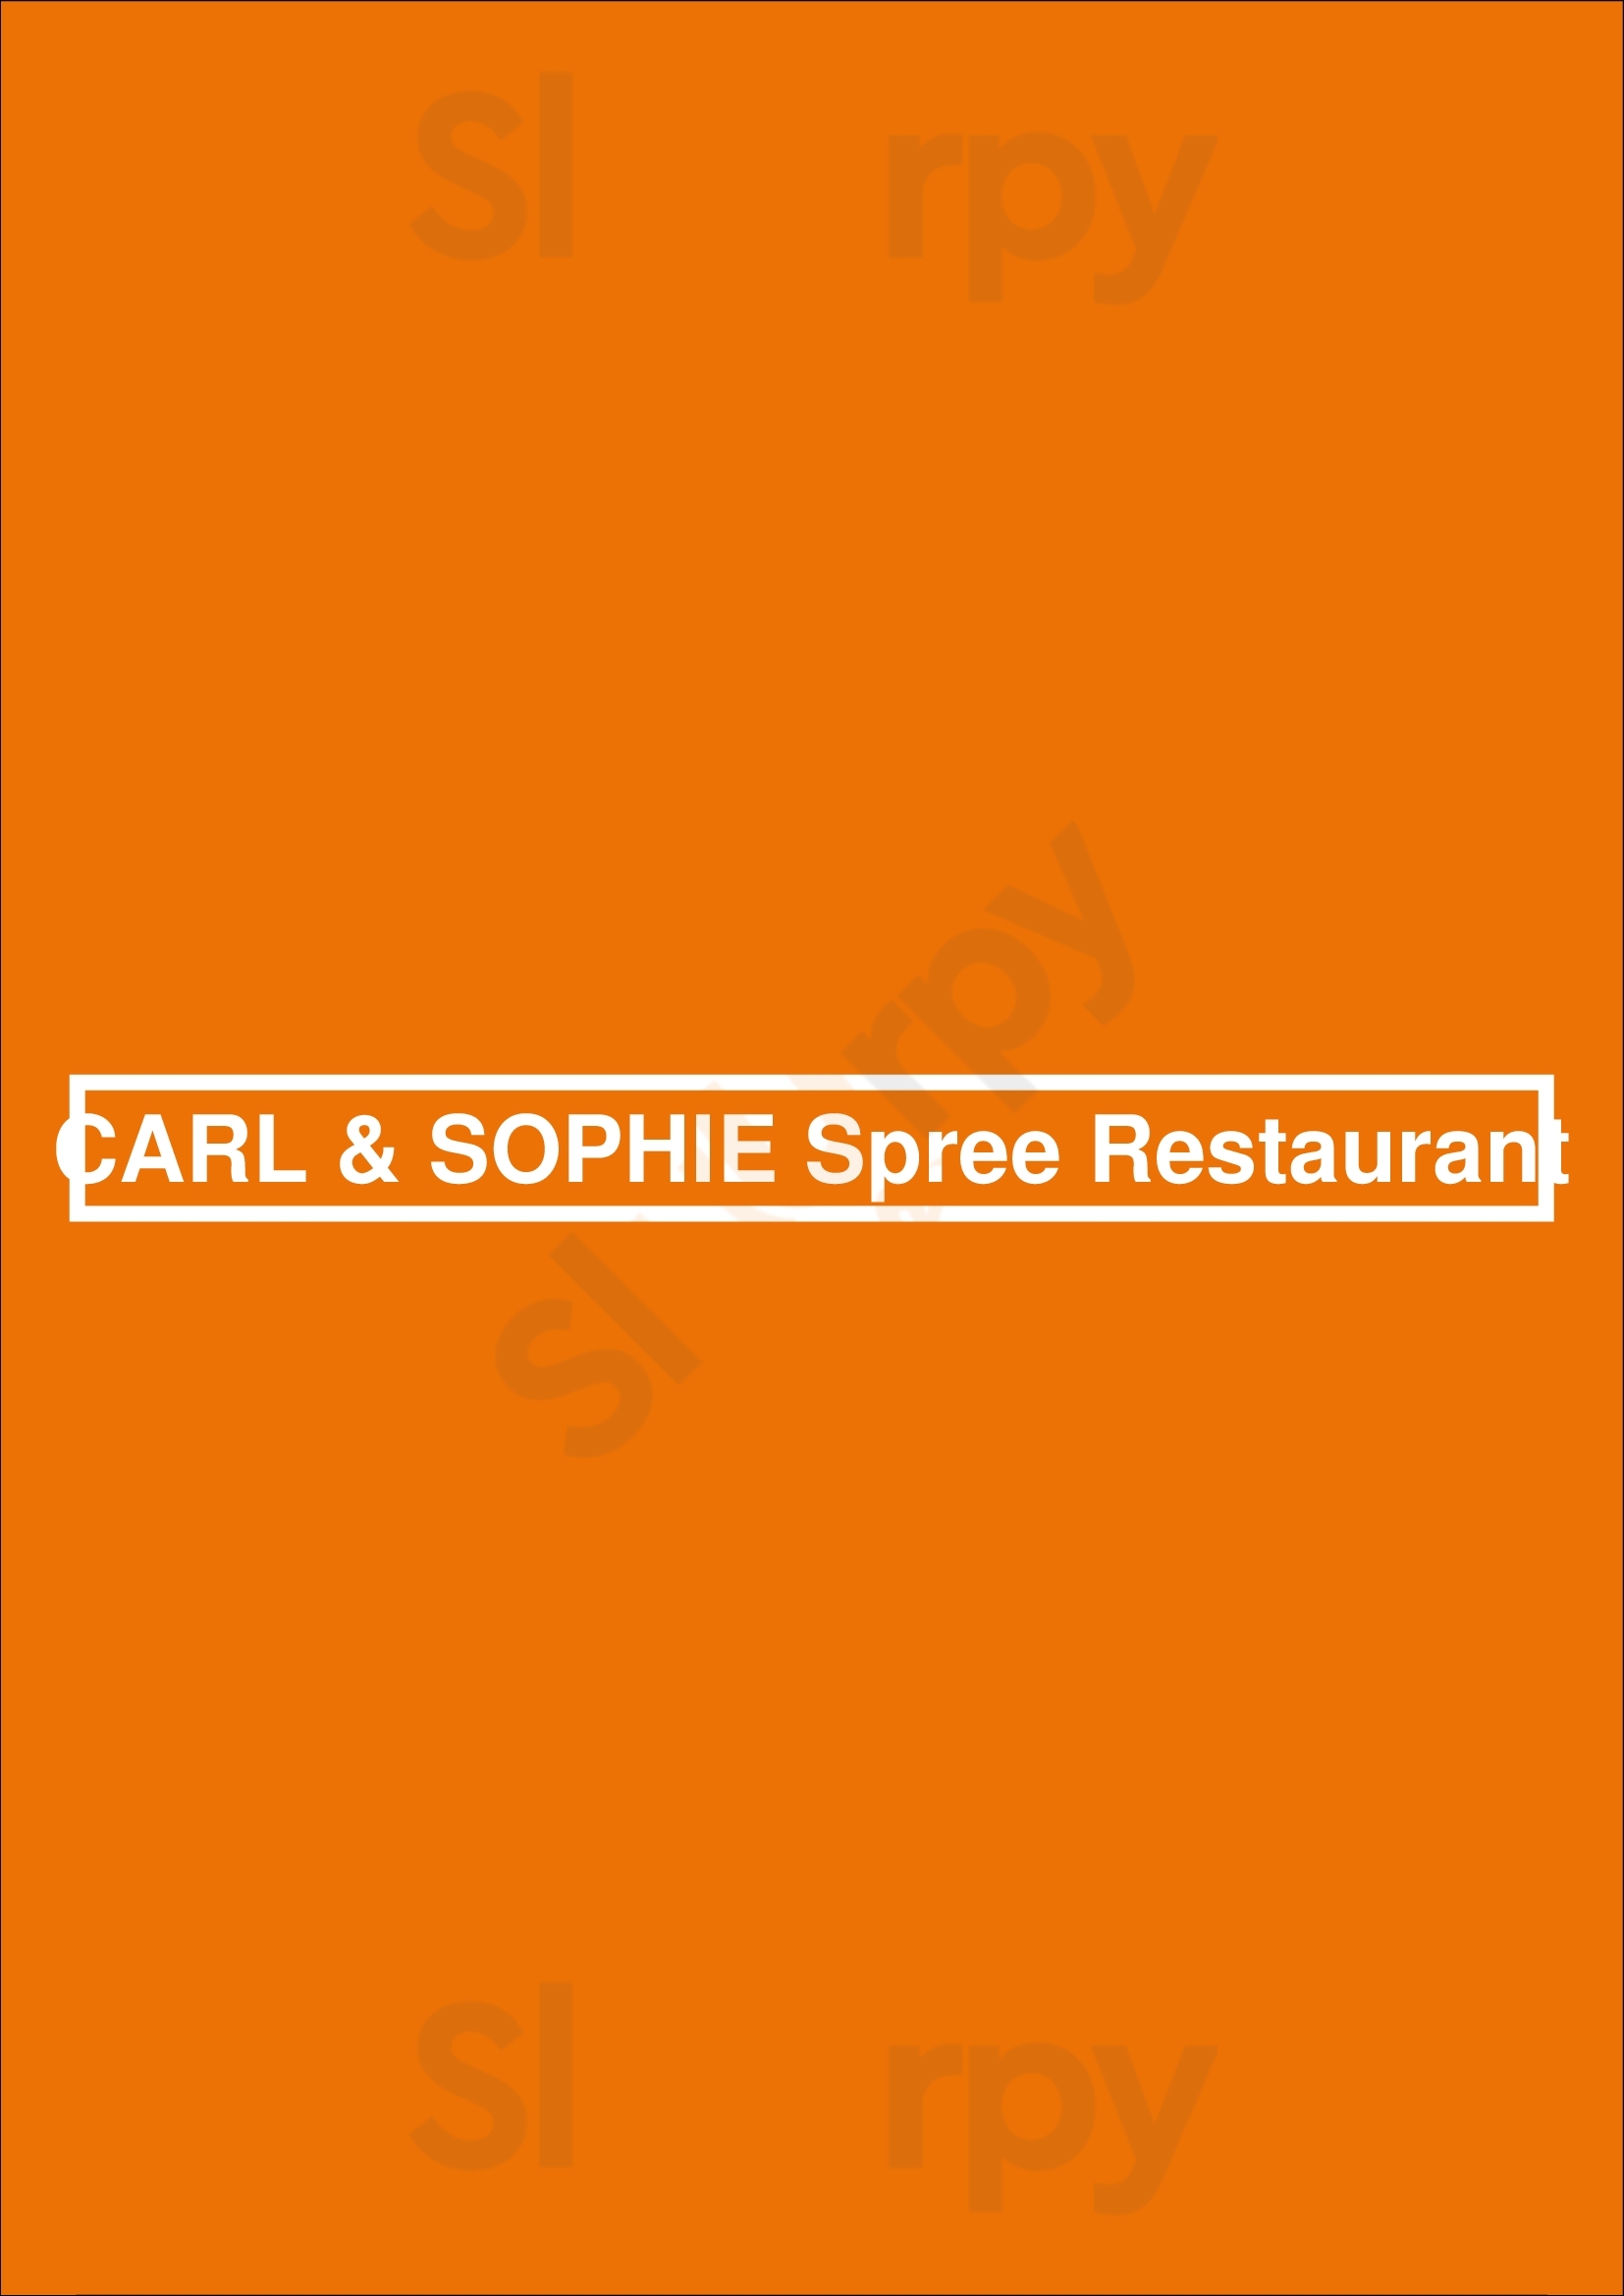 Carl & Sophie Spree Restaurant Berlin Menu - 1